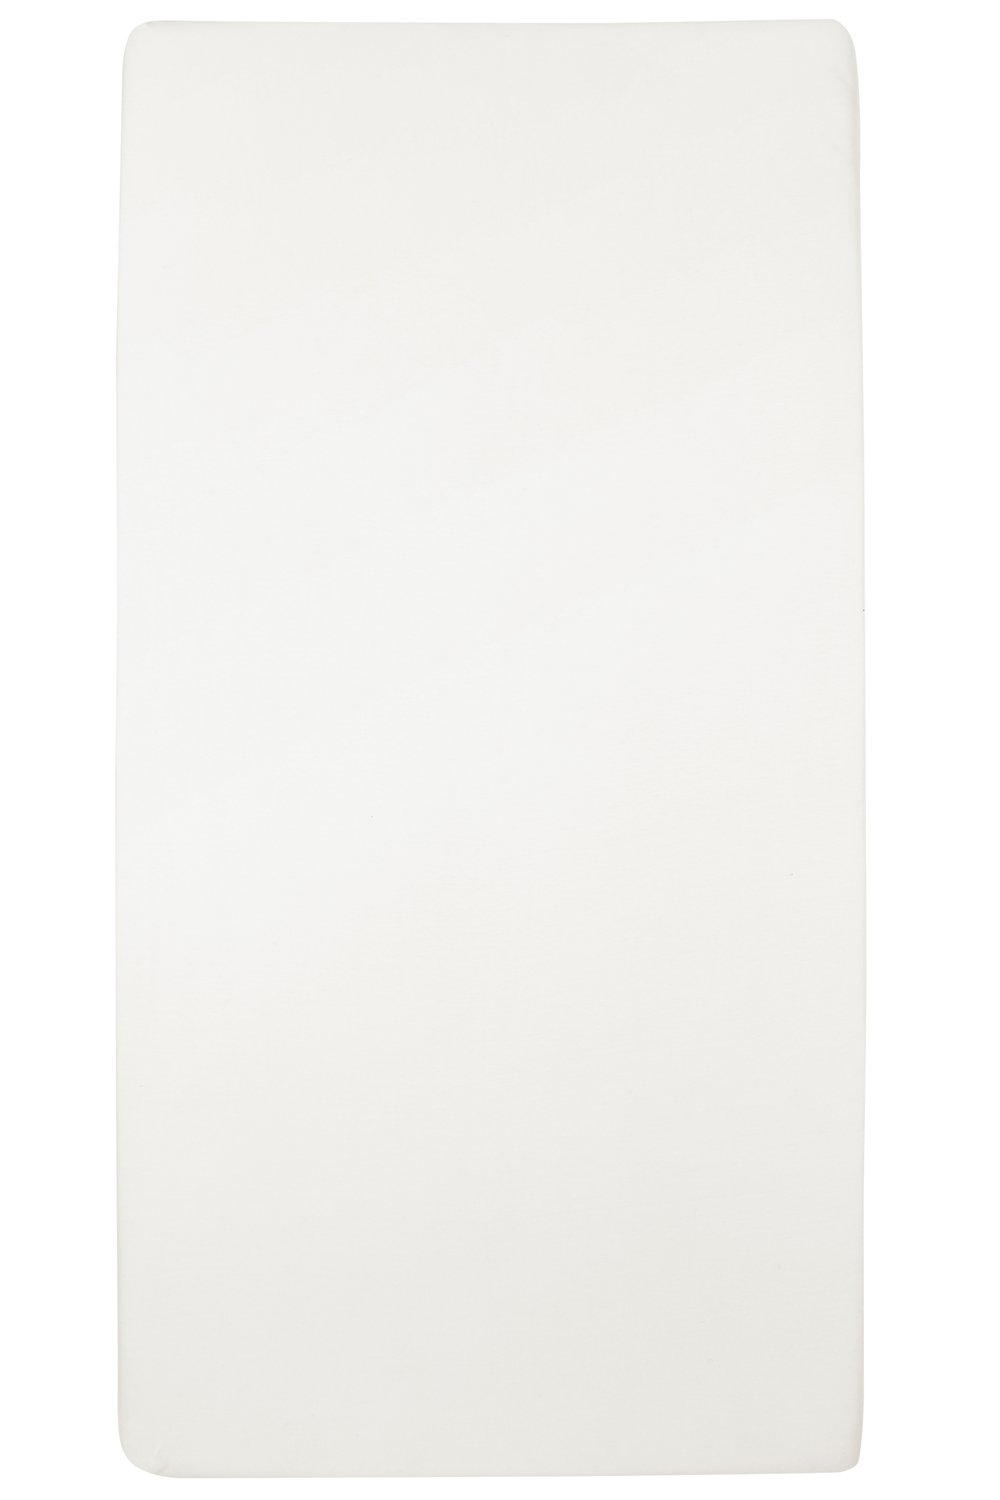 Jersey Hoeslaken - Offwhite - 70x140/150cm